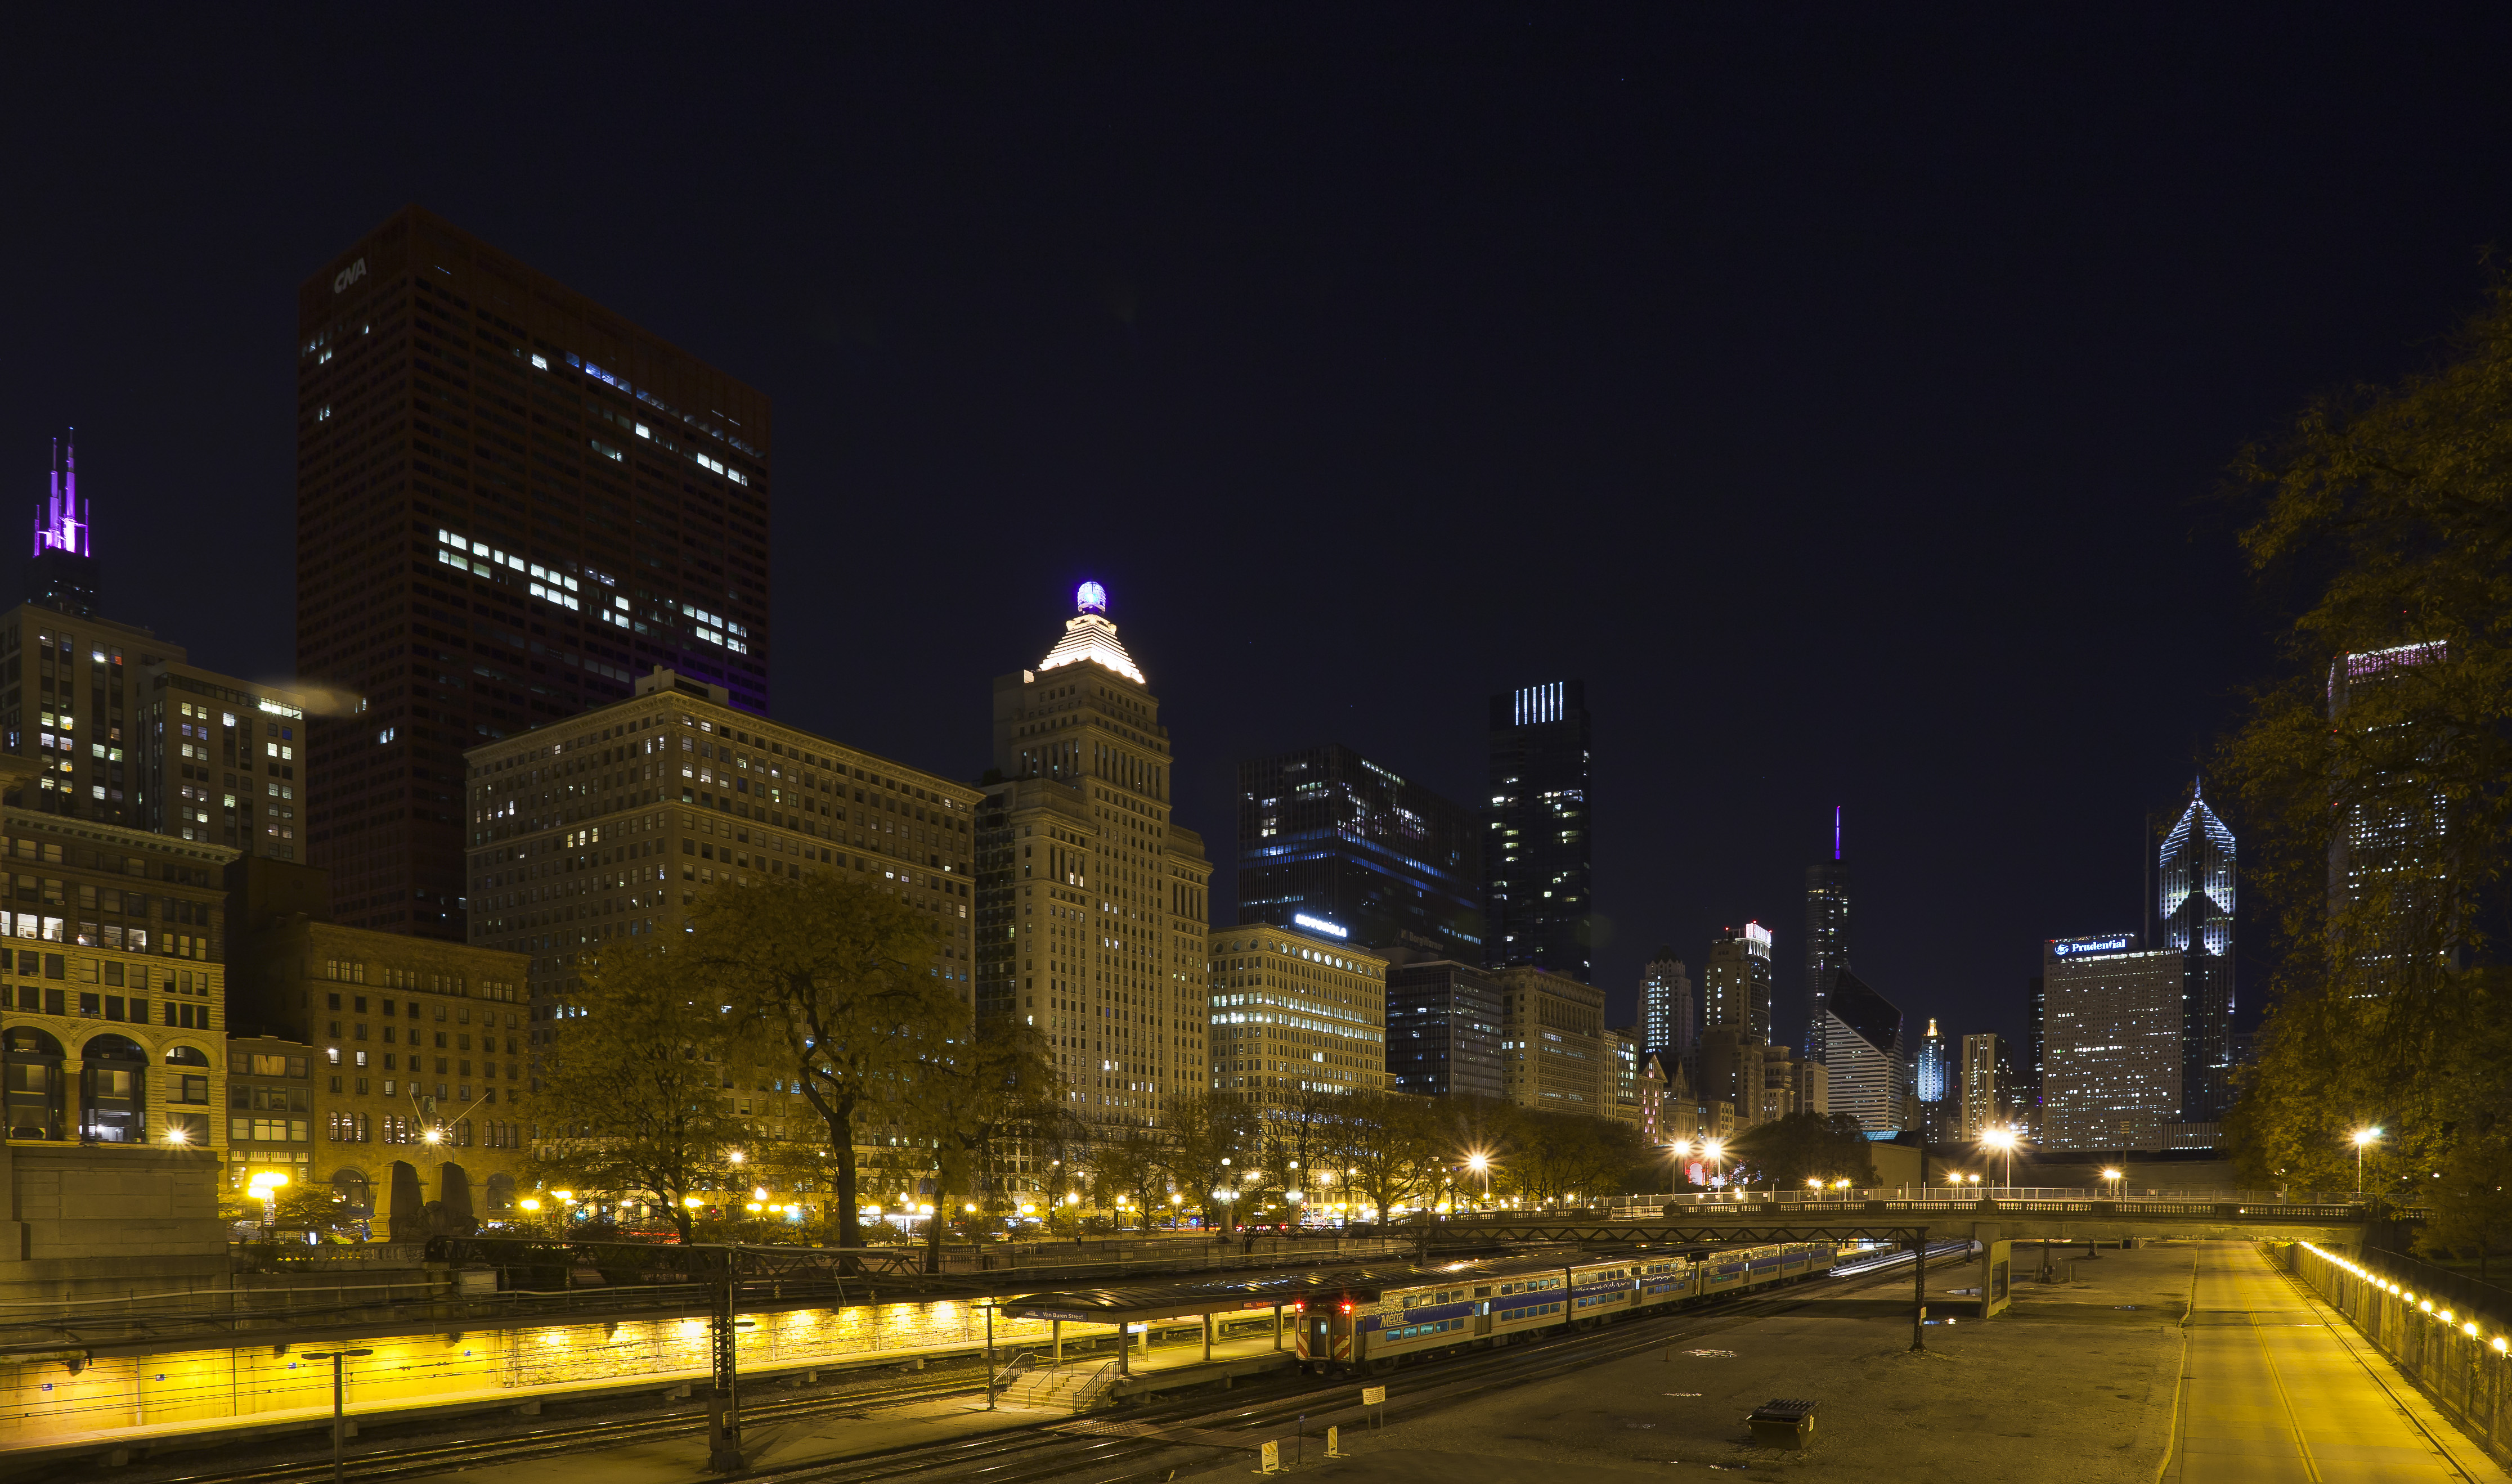 Skyline de Chicago desde el centro, Illinois, Estados Unidos, 2012-10-20, DD 13